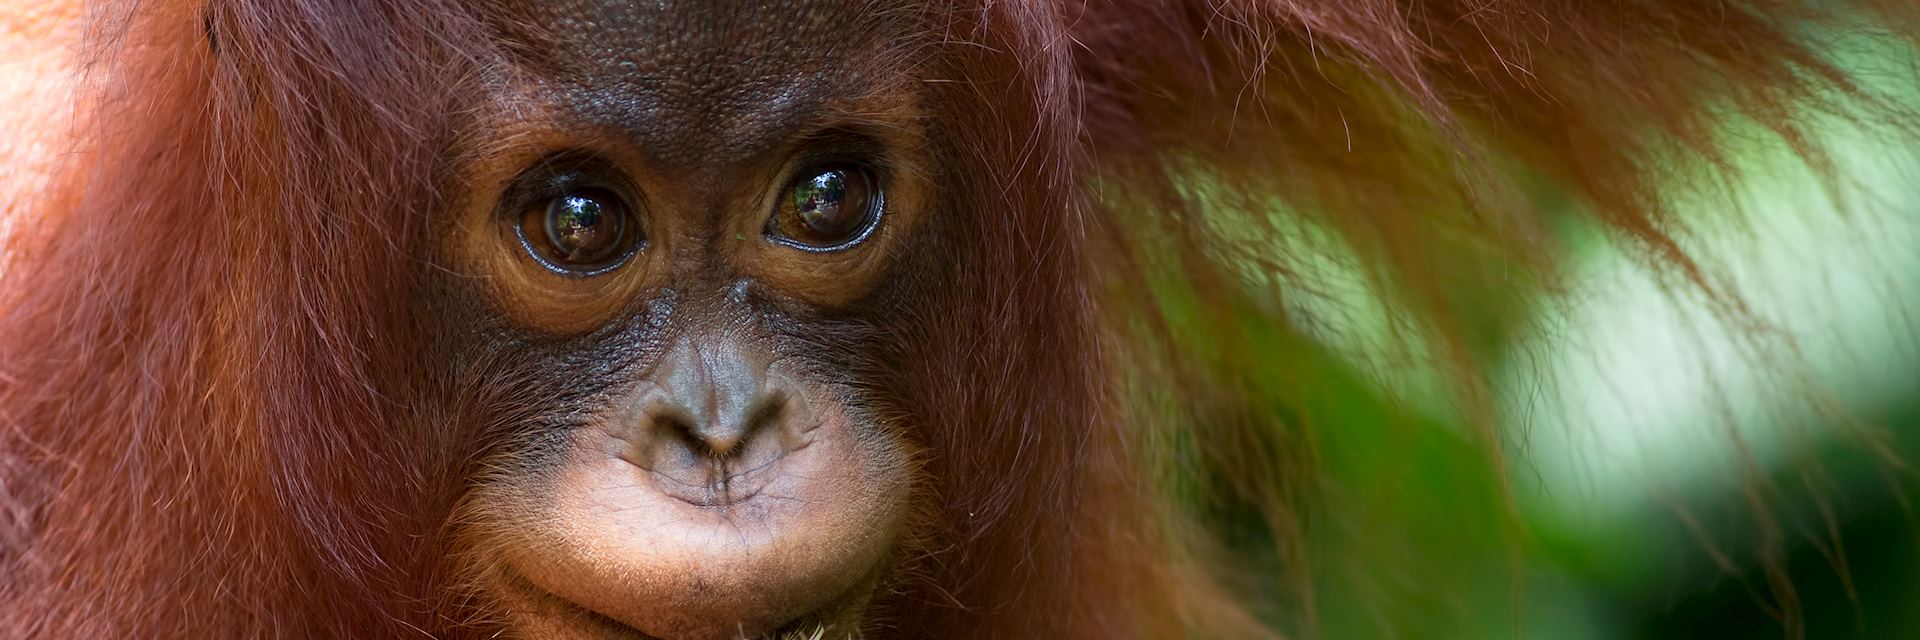 Baby orangutan at Sepilok